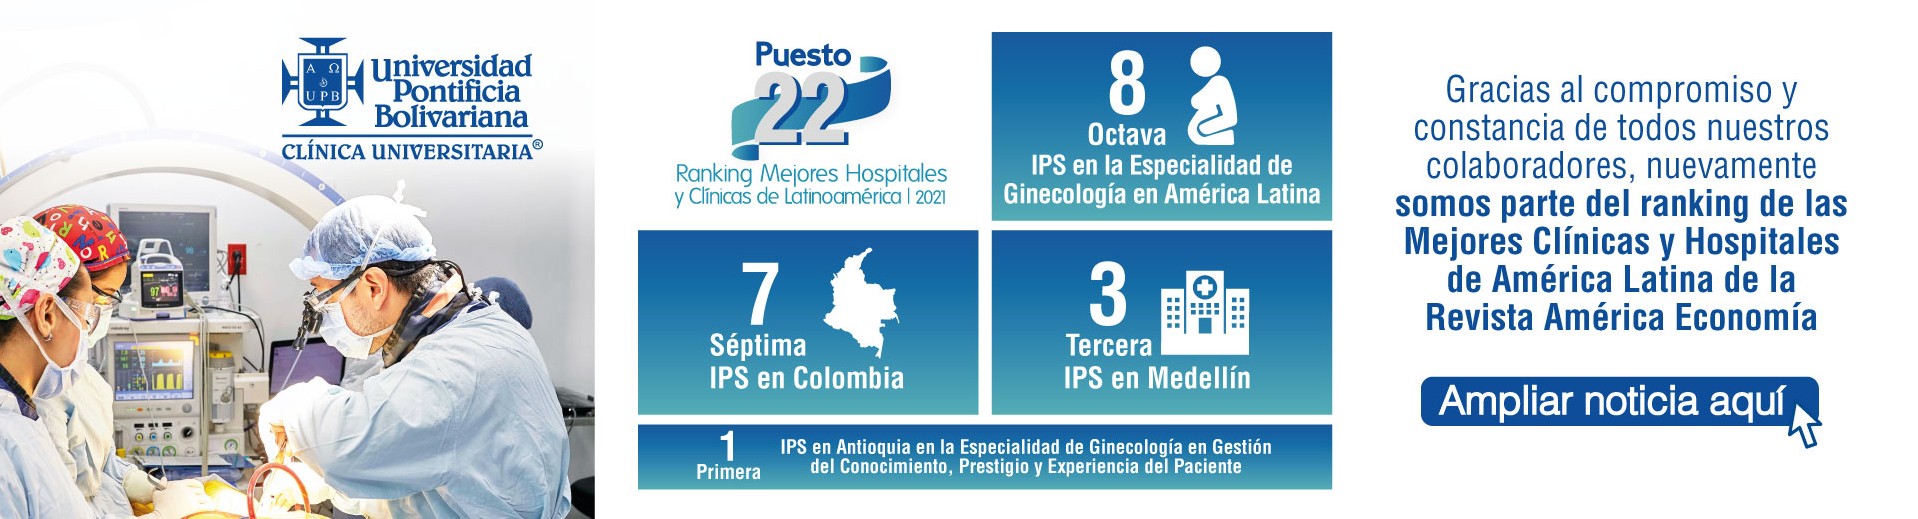 La Clínica Universitaria Bolivariana se ubica en el puesto 22 del Ranking de los Mejores Hospitales y Clínicas de América Latina 2021, publicado por la Revista América Economía.